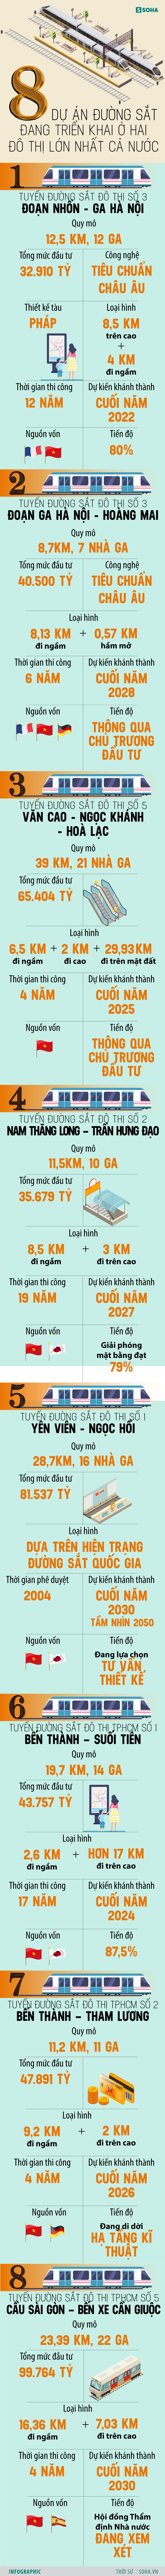 [INFOGRAPHIC] 8 tuyến đường sắt khủng, gần 450.000 tỷ đang triển khai ở Hà Nội và TP.HCM - Ảnh 1.